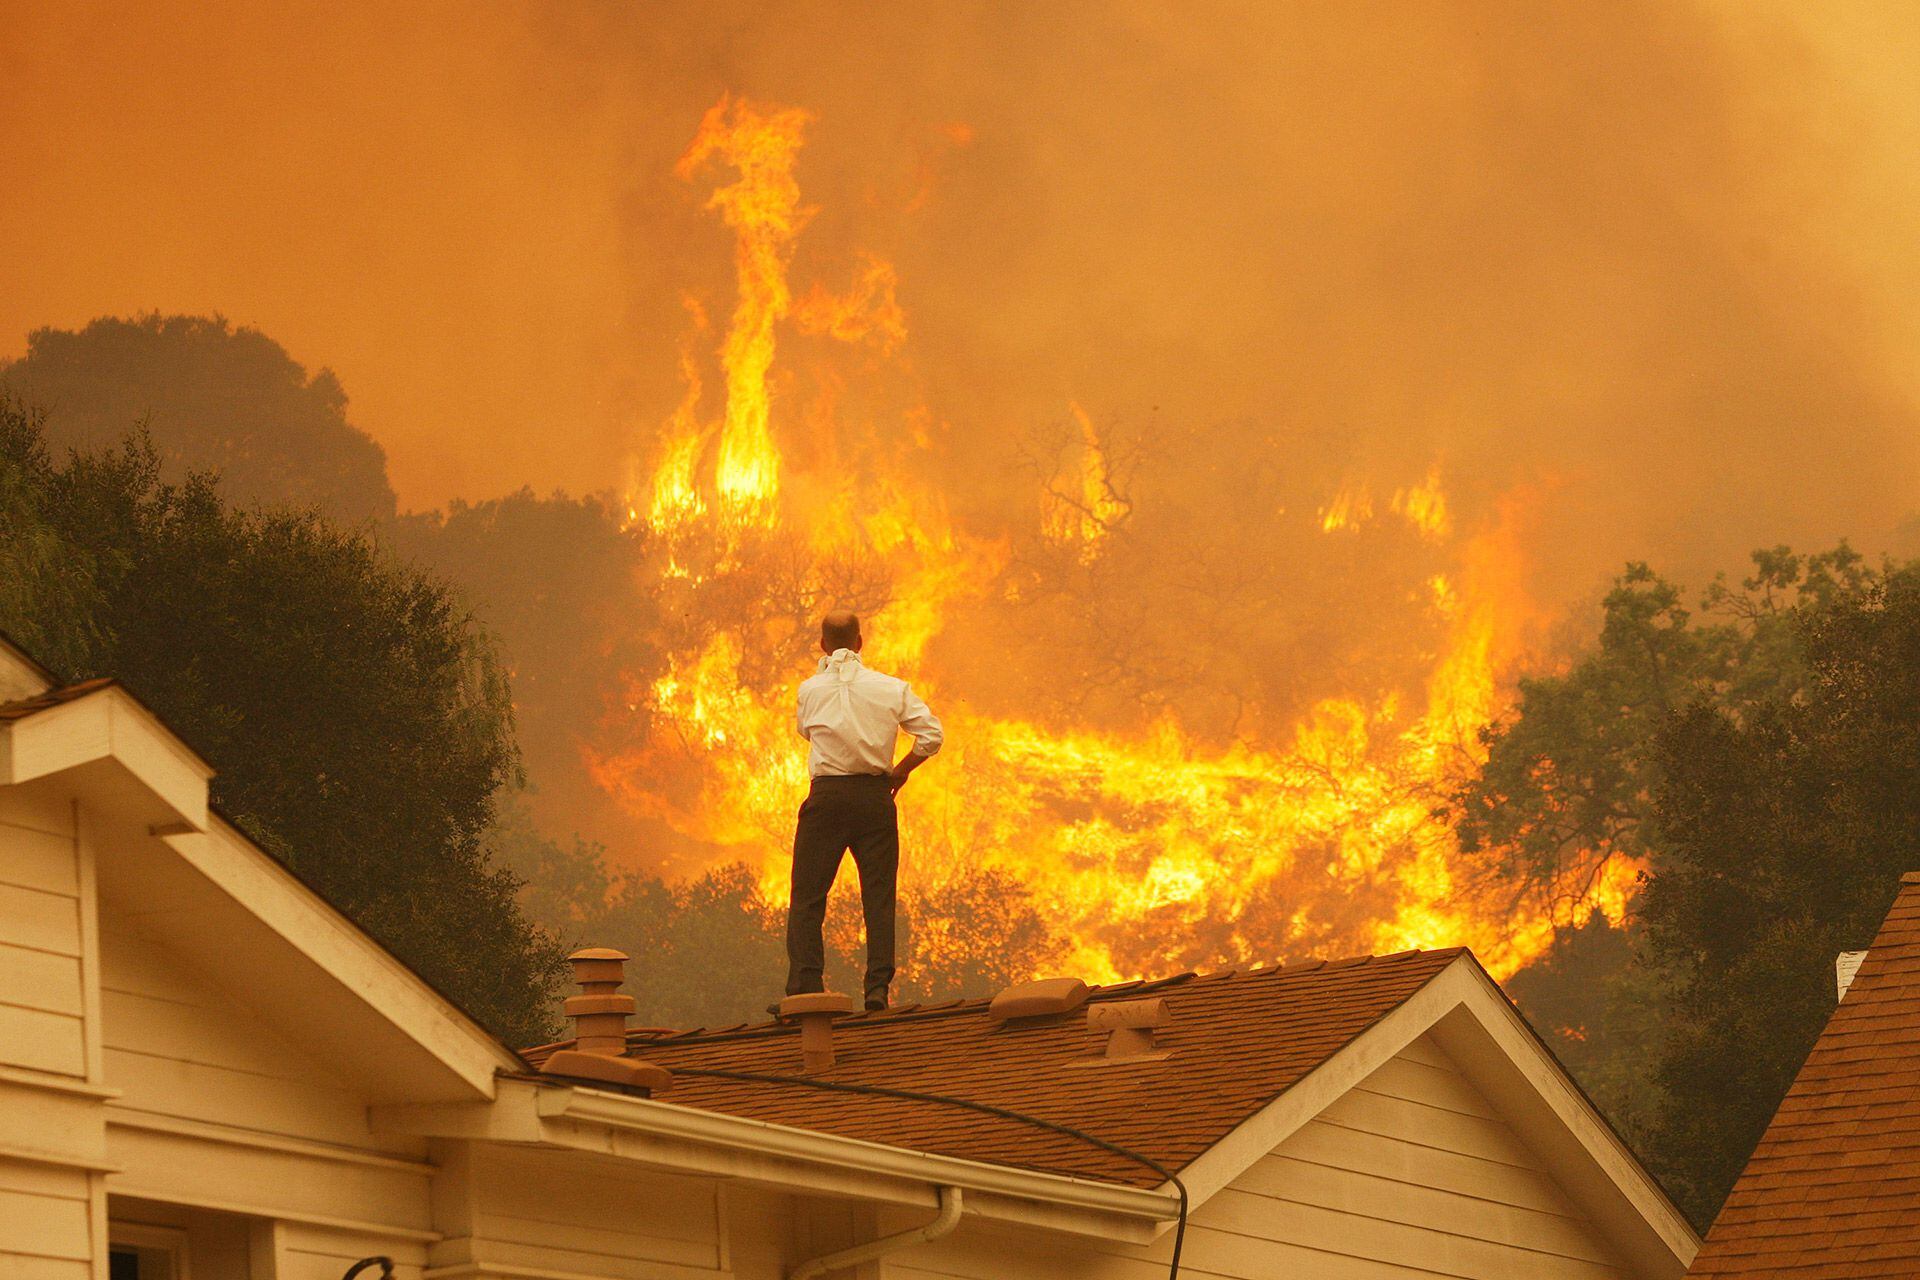 Los incendios forestales son cada vez más frecuentes a medida que aumenta la temperatura del globo terráqueo de forma alarmante (Getty Images)